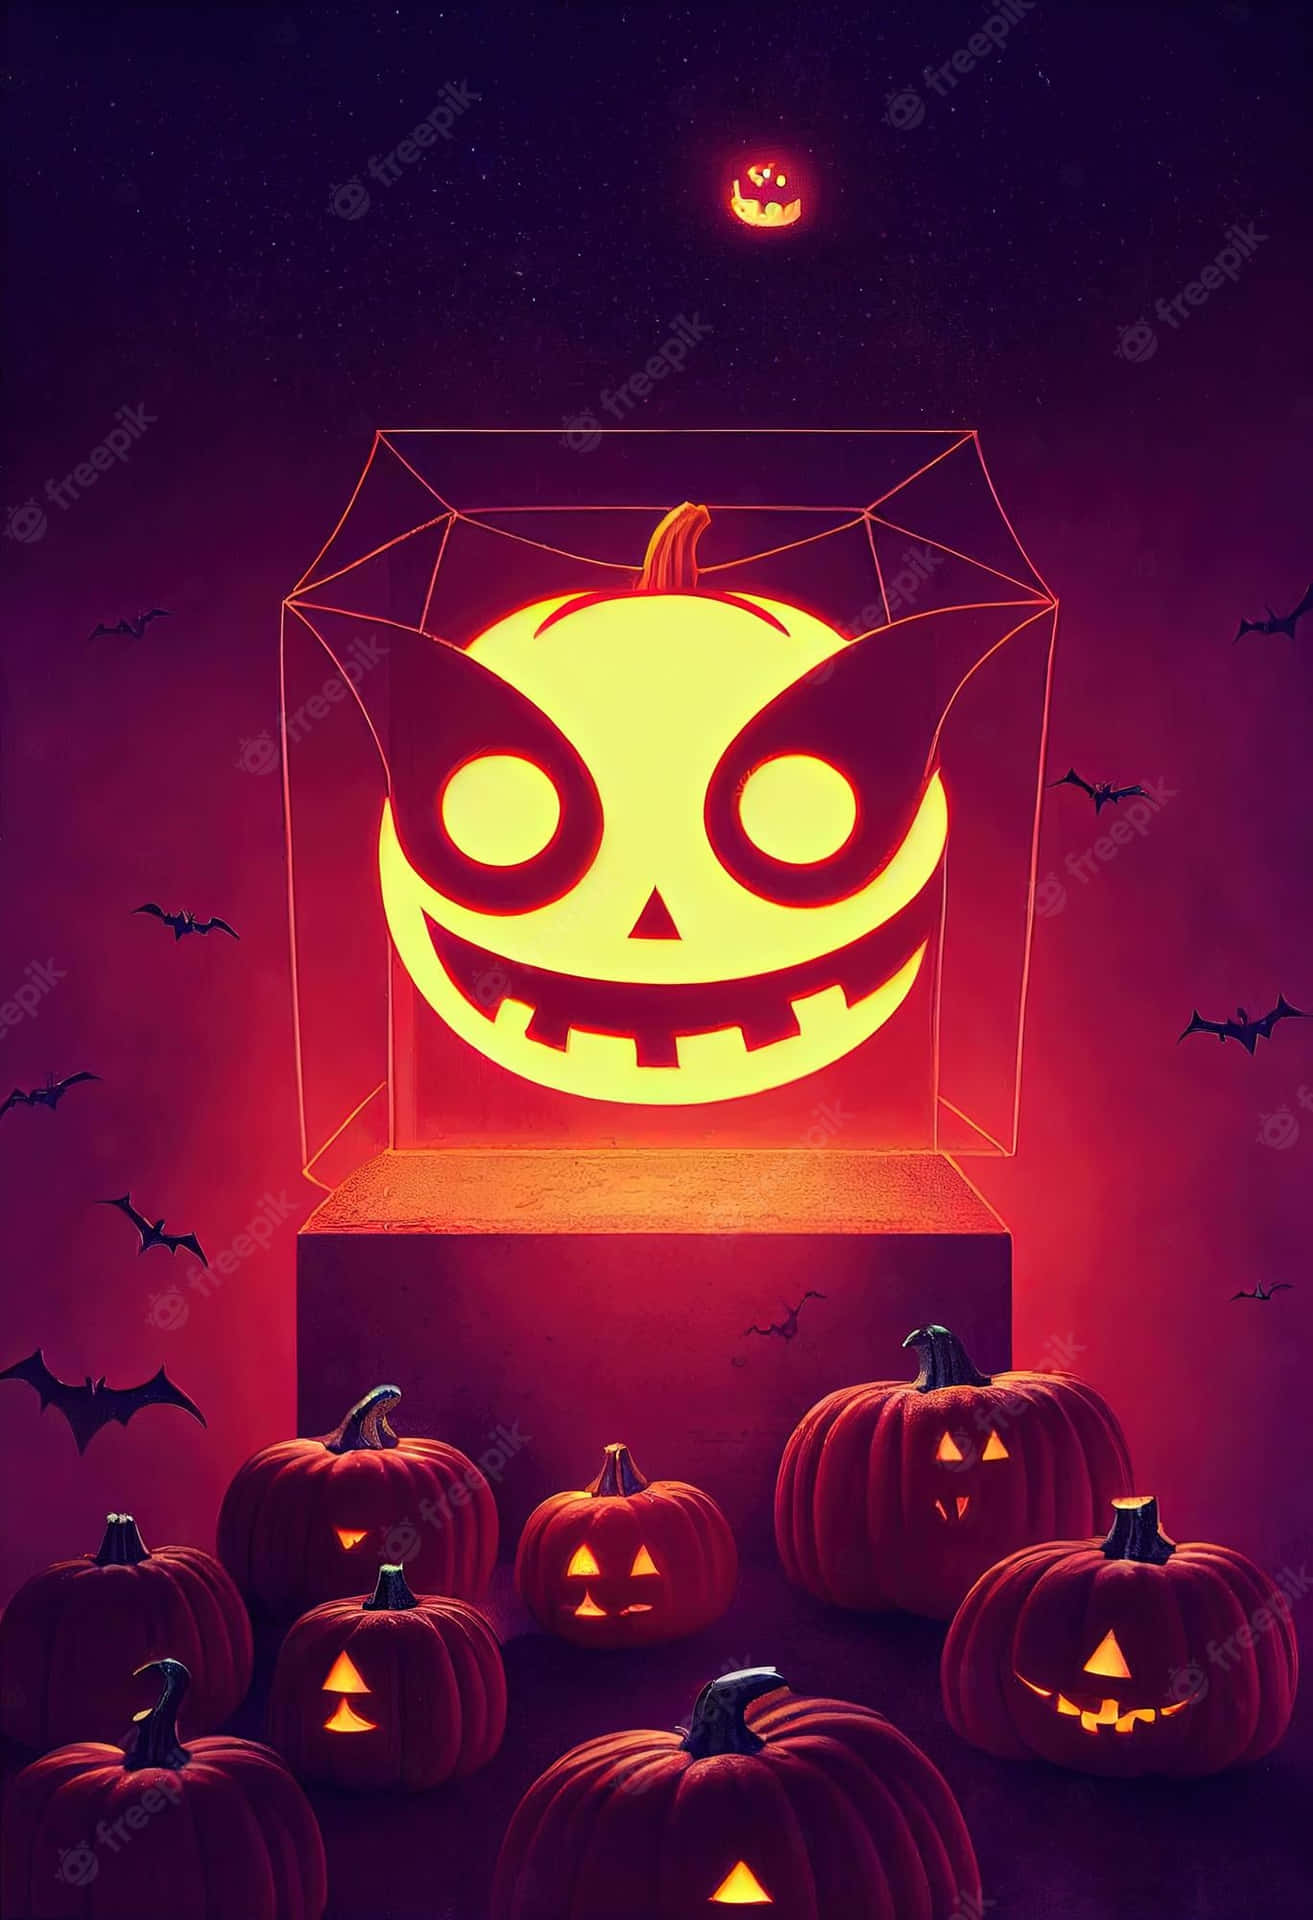 Halloweenkürbisse In Einer Box Mit Leuchtendem Gesicht Wallpaper